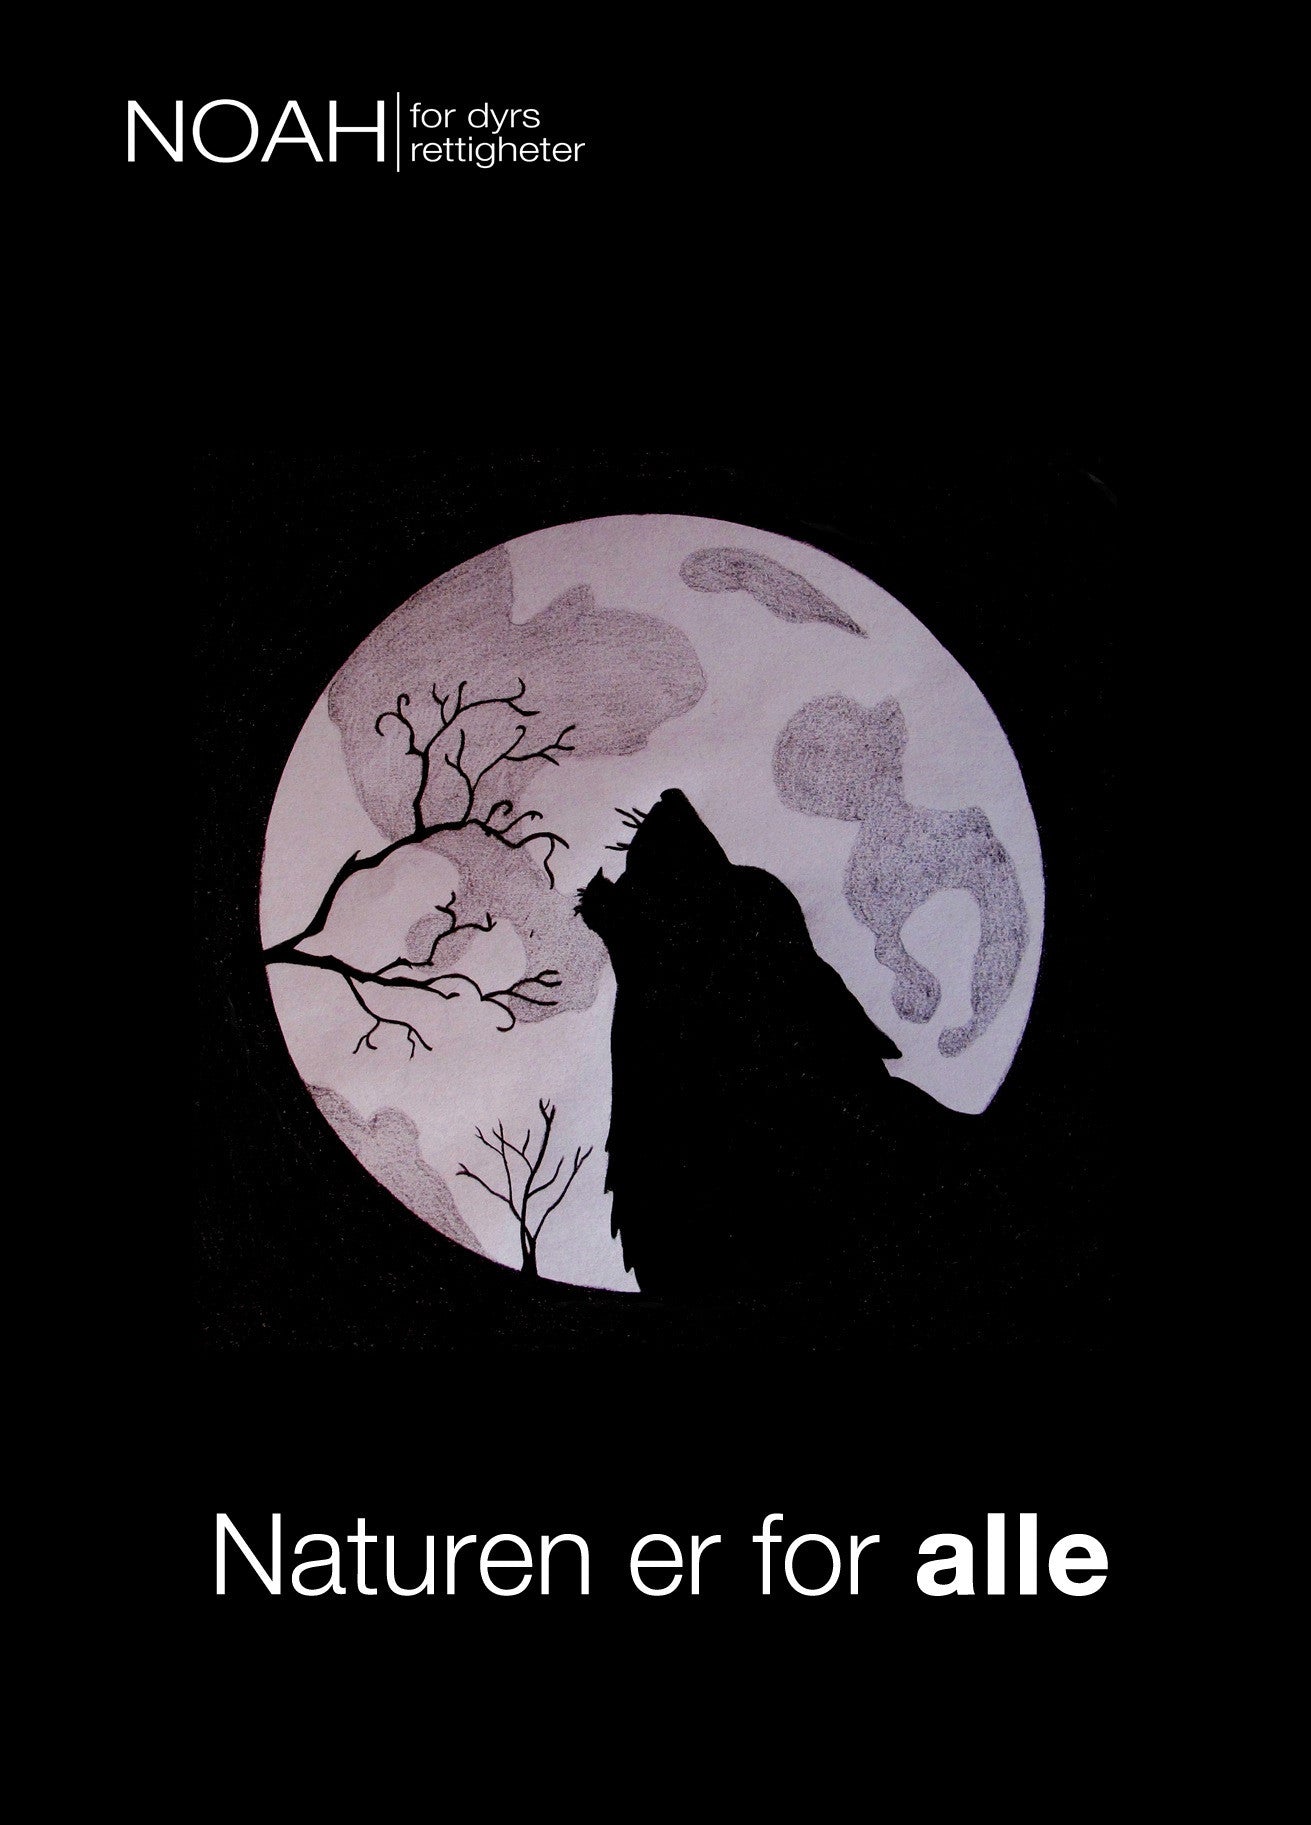 Kort ulv og måne